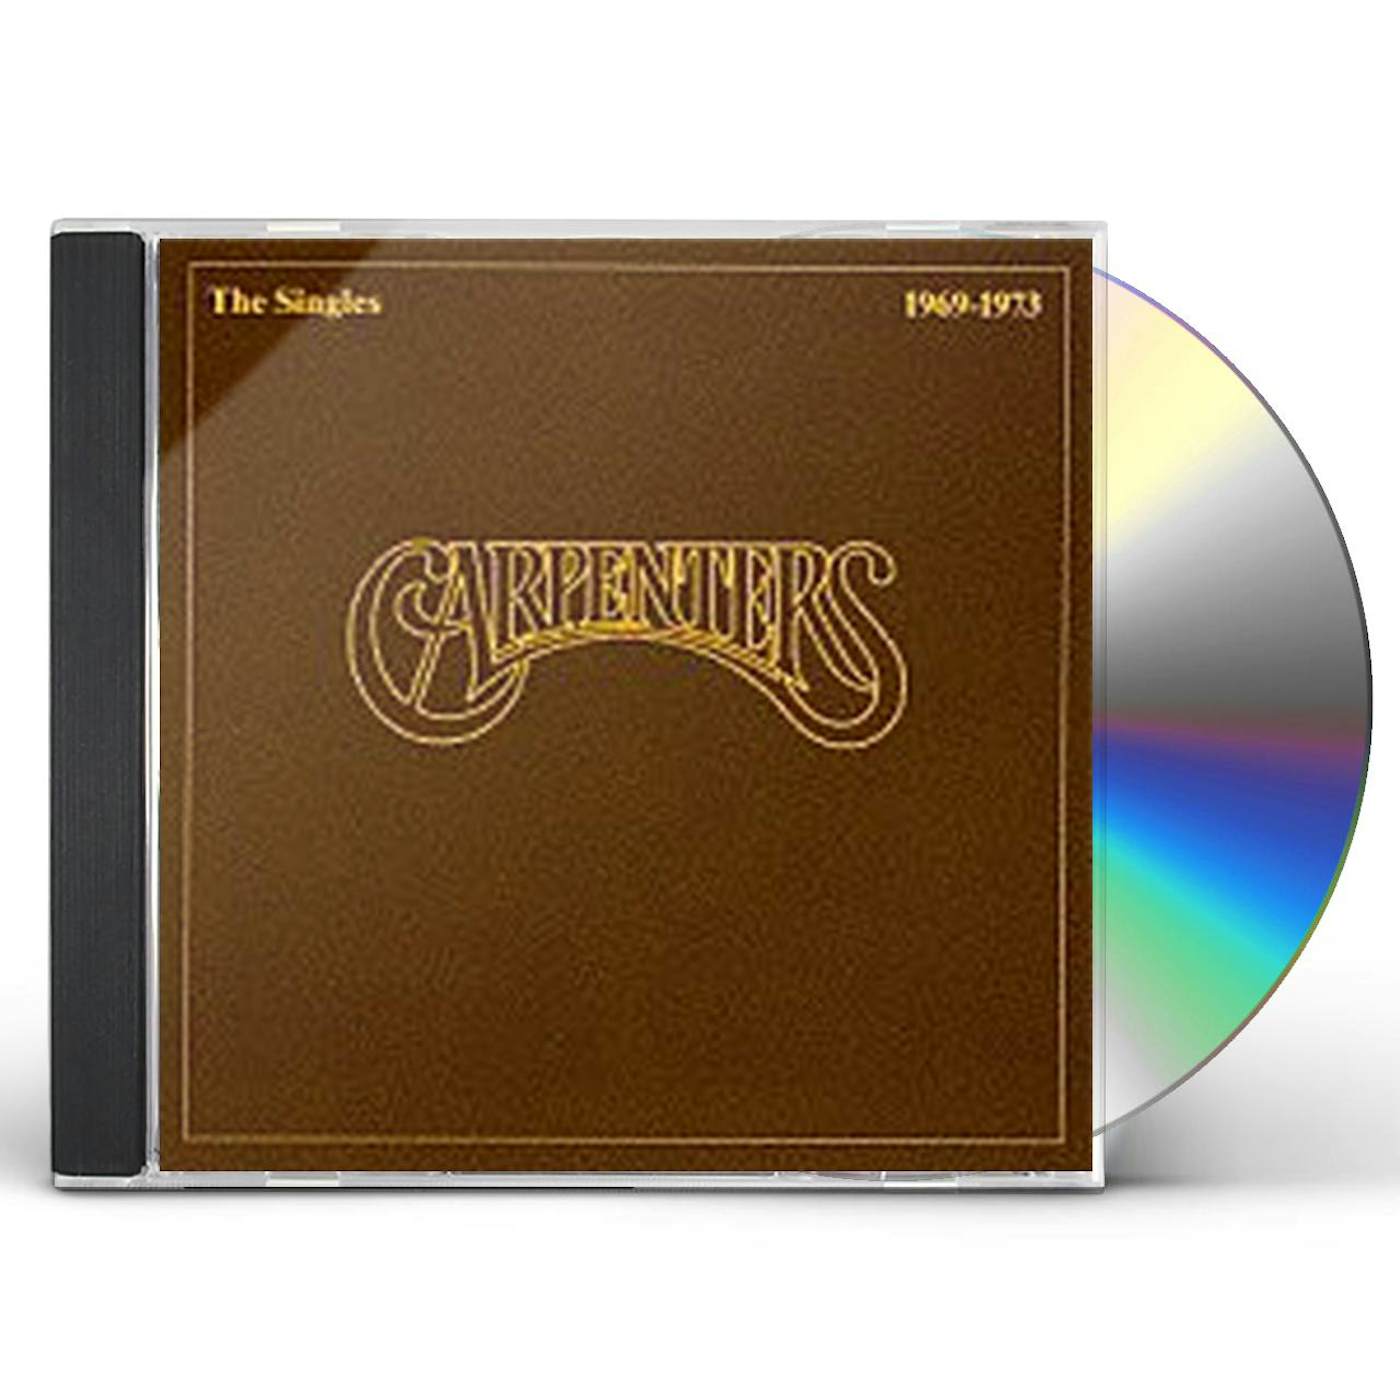 Carpenters SINGLES 1969 - 1973 CD